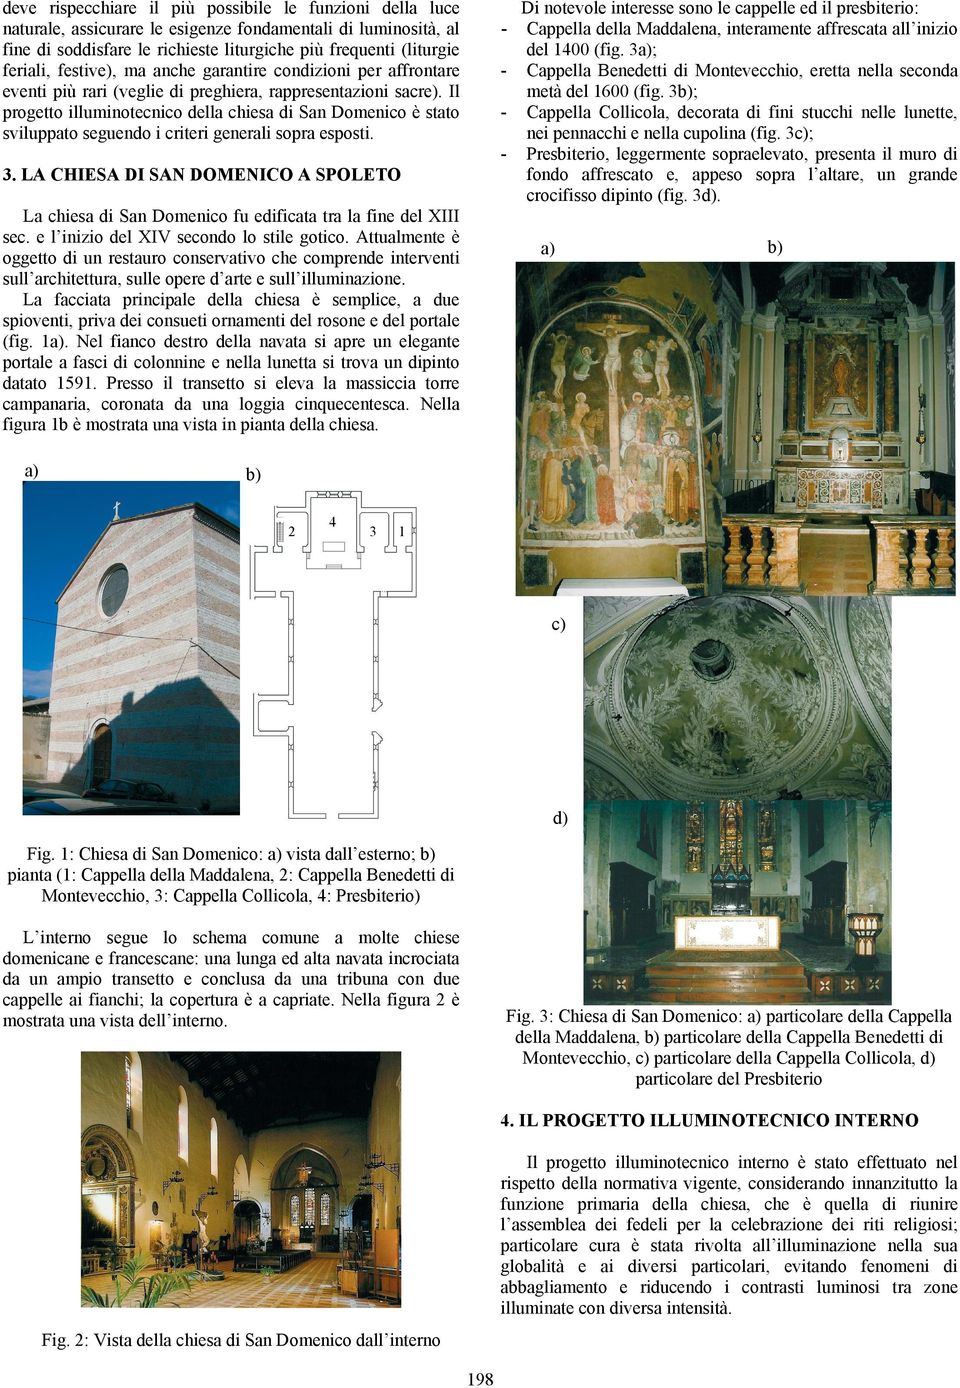 Il progetto illuminotecnico della chiesa di San Domenico è stato sviluppato seguendo i criteri generali sopra esposti.